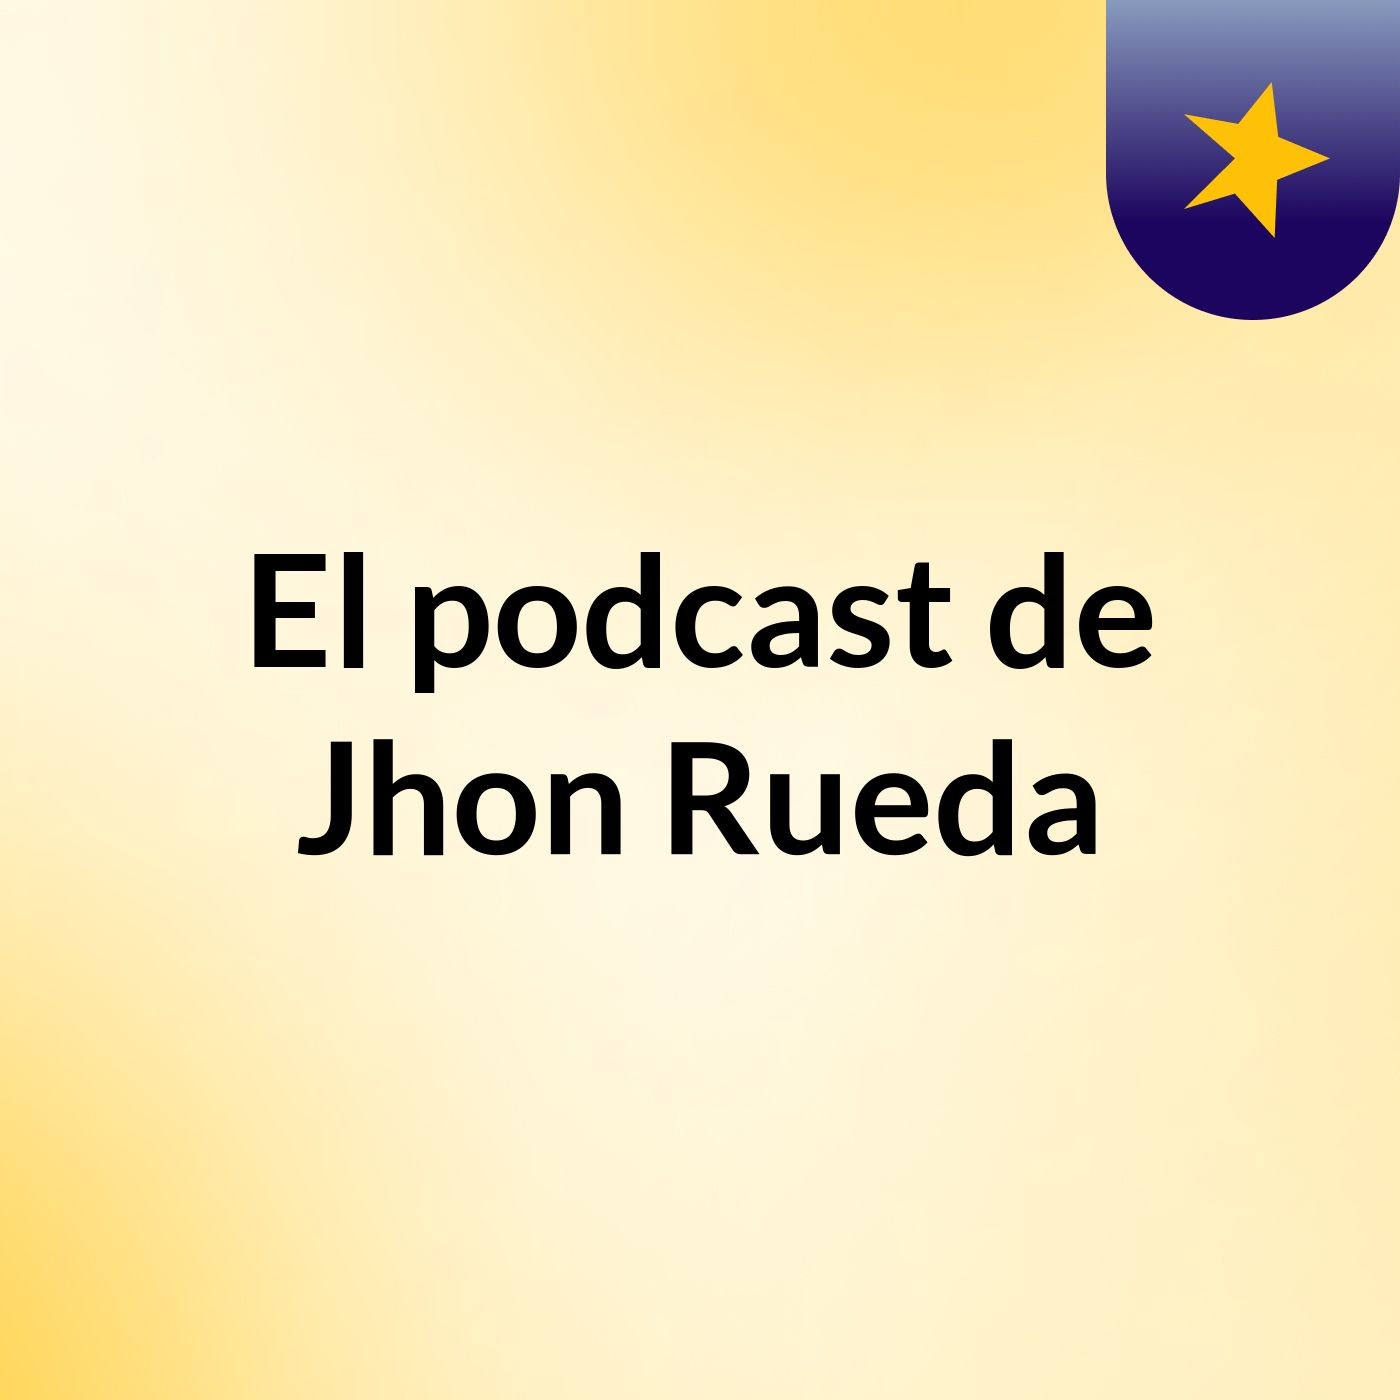 Motivasabado1 - El podcast de Jhon Rueda